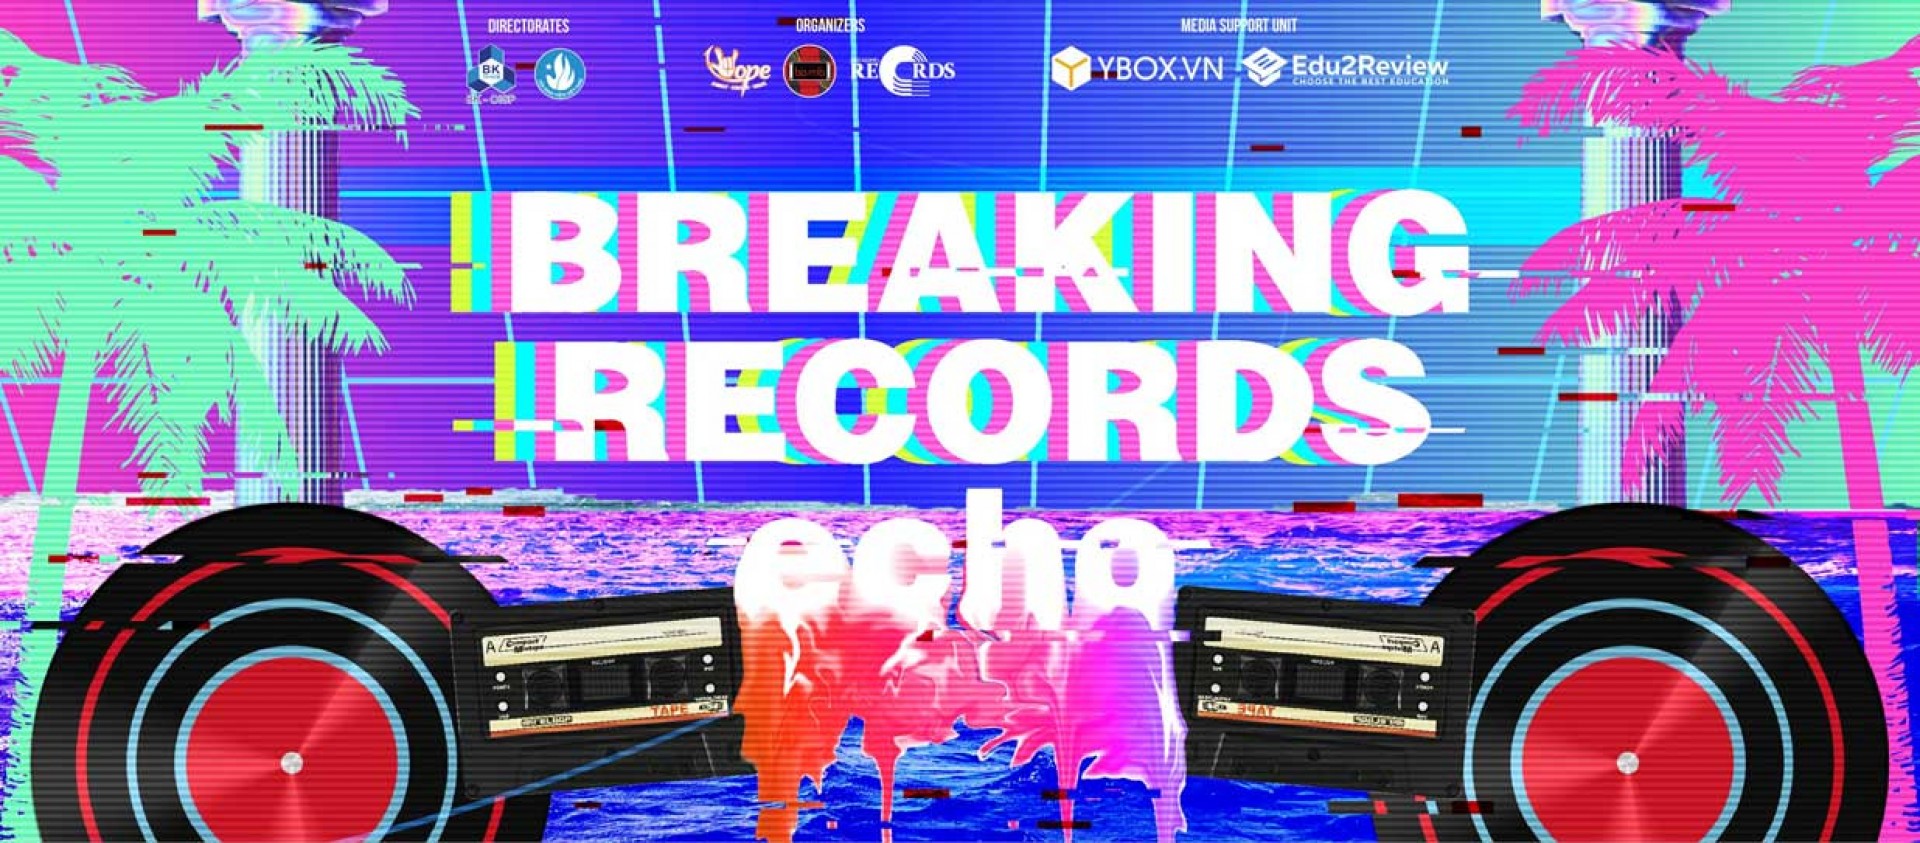 VÒNG CHUNG KẾT CUỘC THI BREAKING RECORDS 2021: ECHO - LAN TỎA TÌNH YÊU ÂM NHẠC